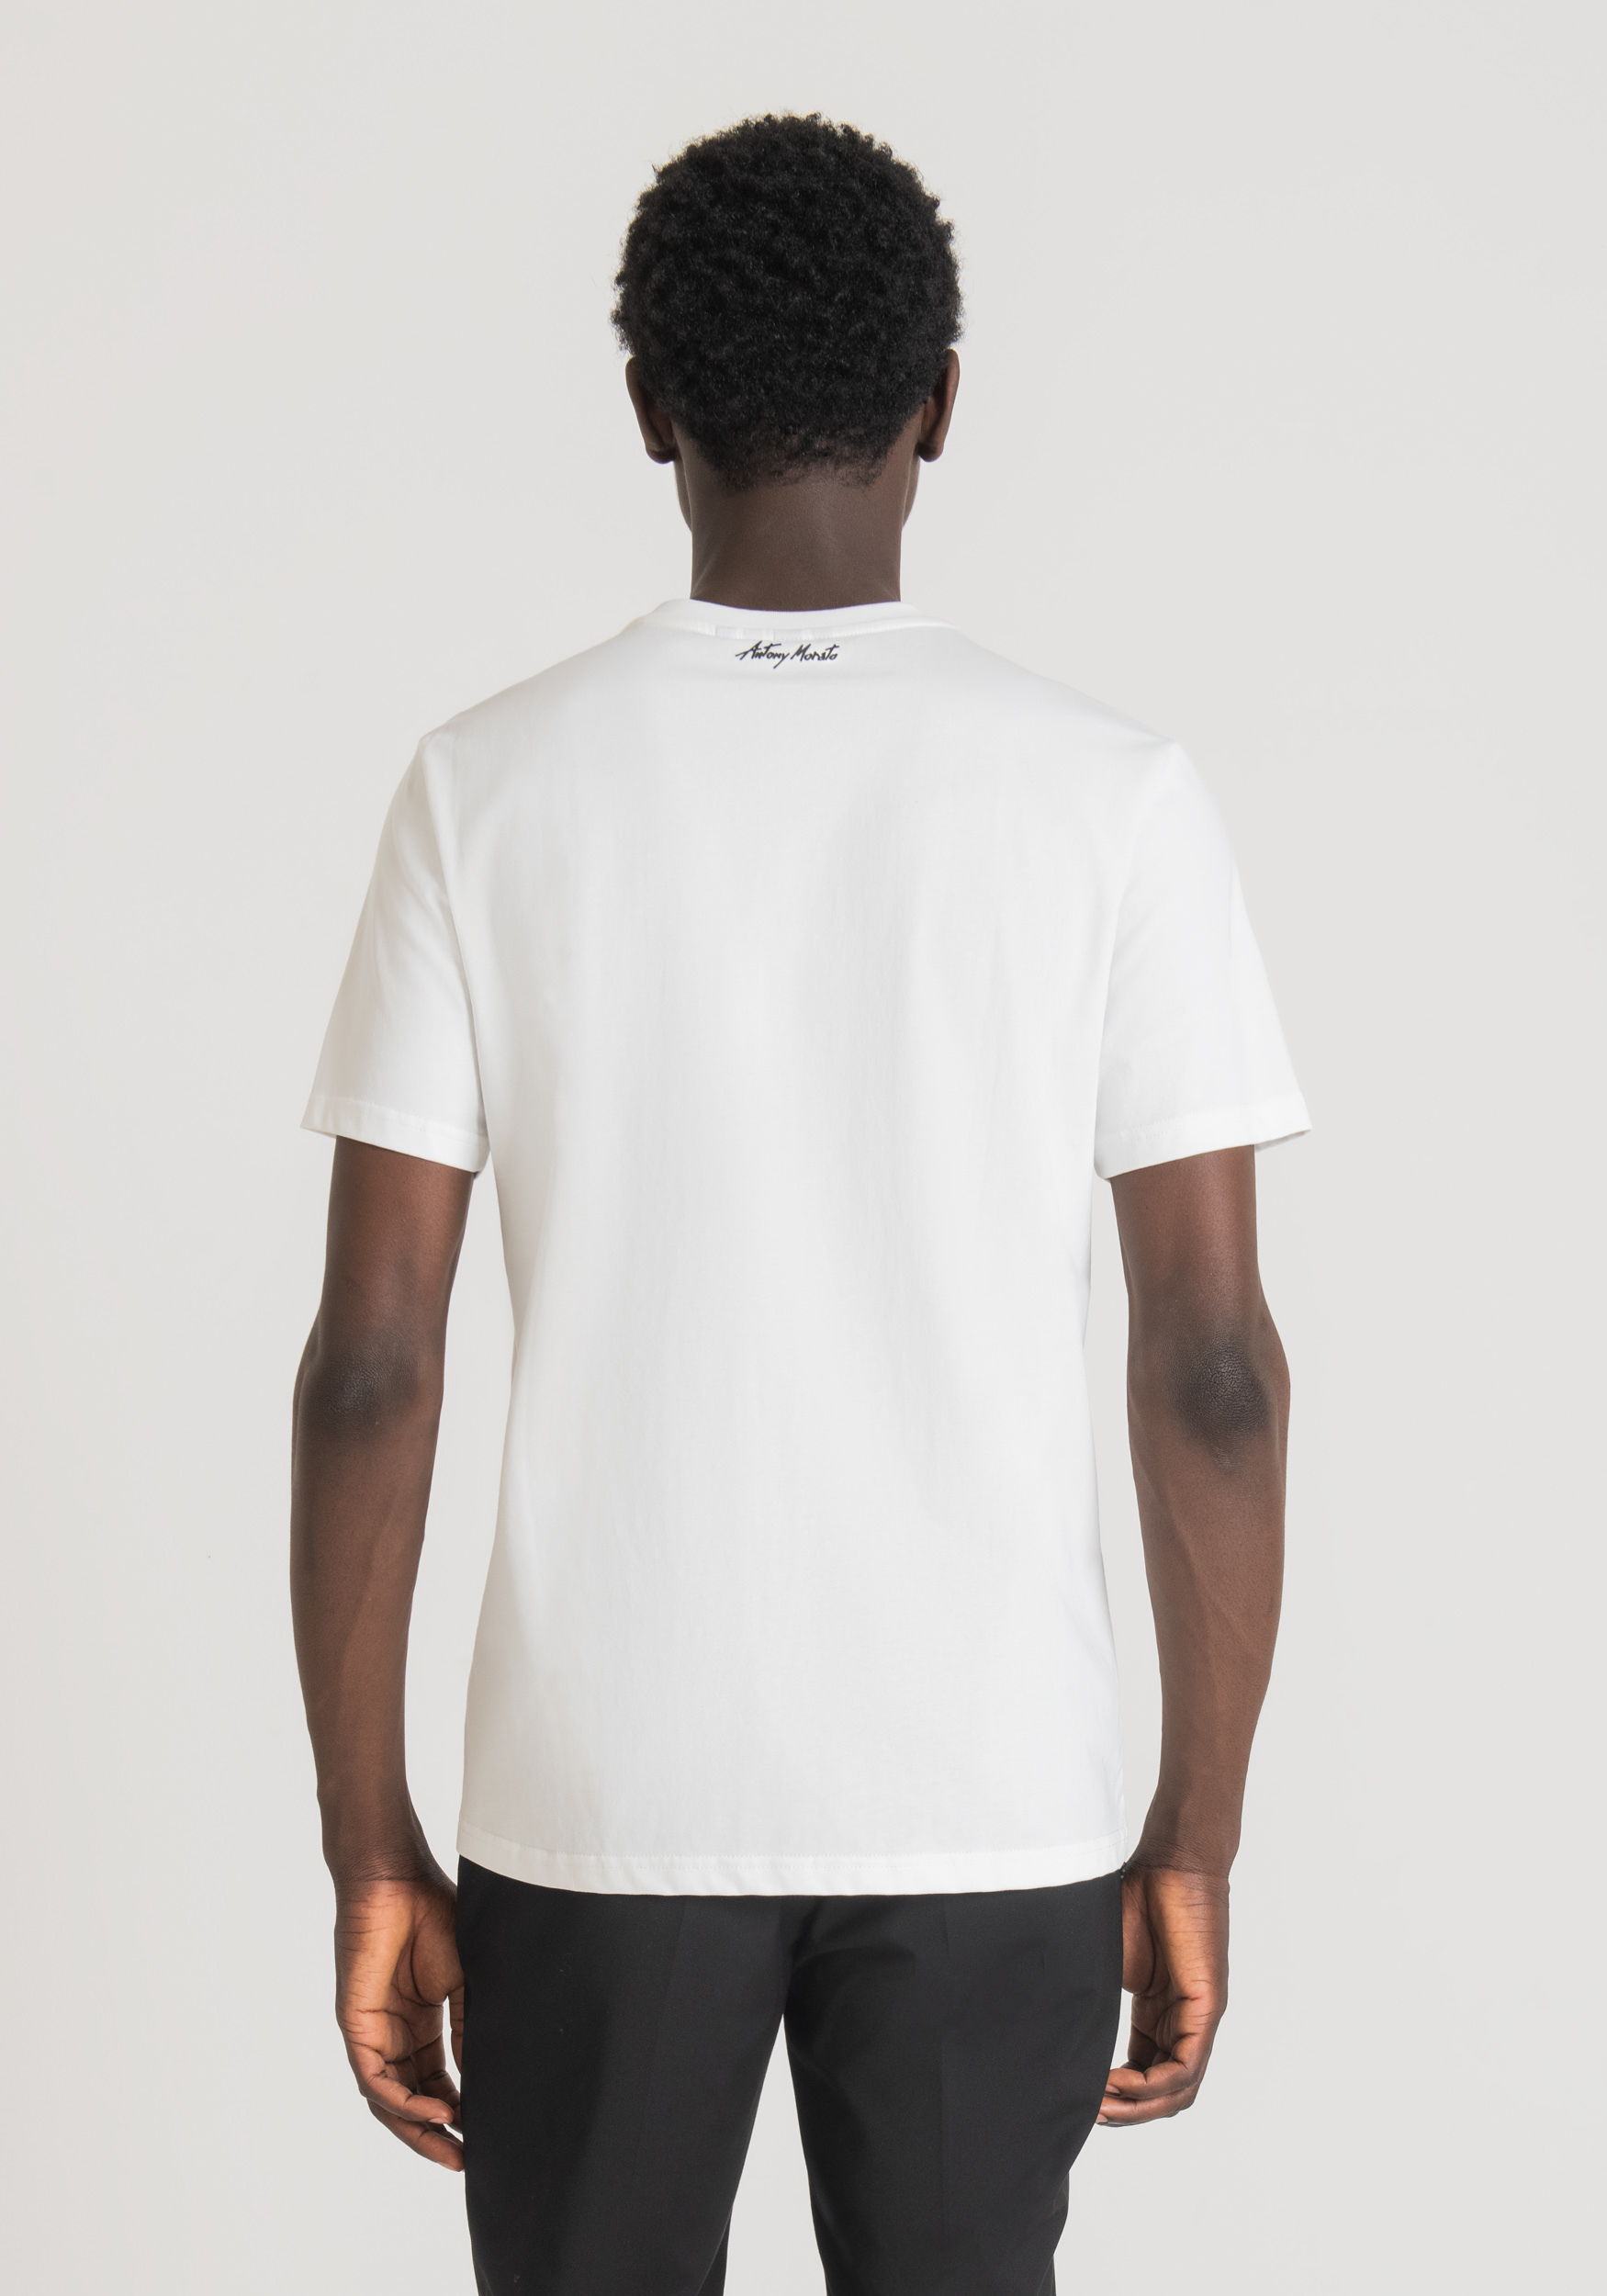 Antony Morato T-Shirt Regular Fit 100 % Coton Avec Impression Basquiat Creme | Homme T-Shirts Et Polos